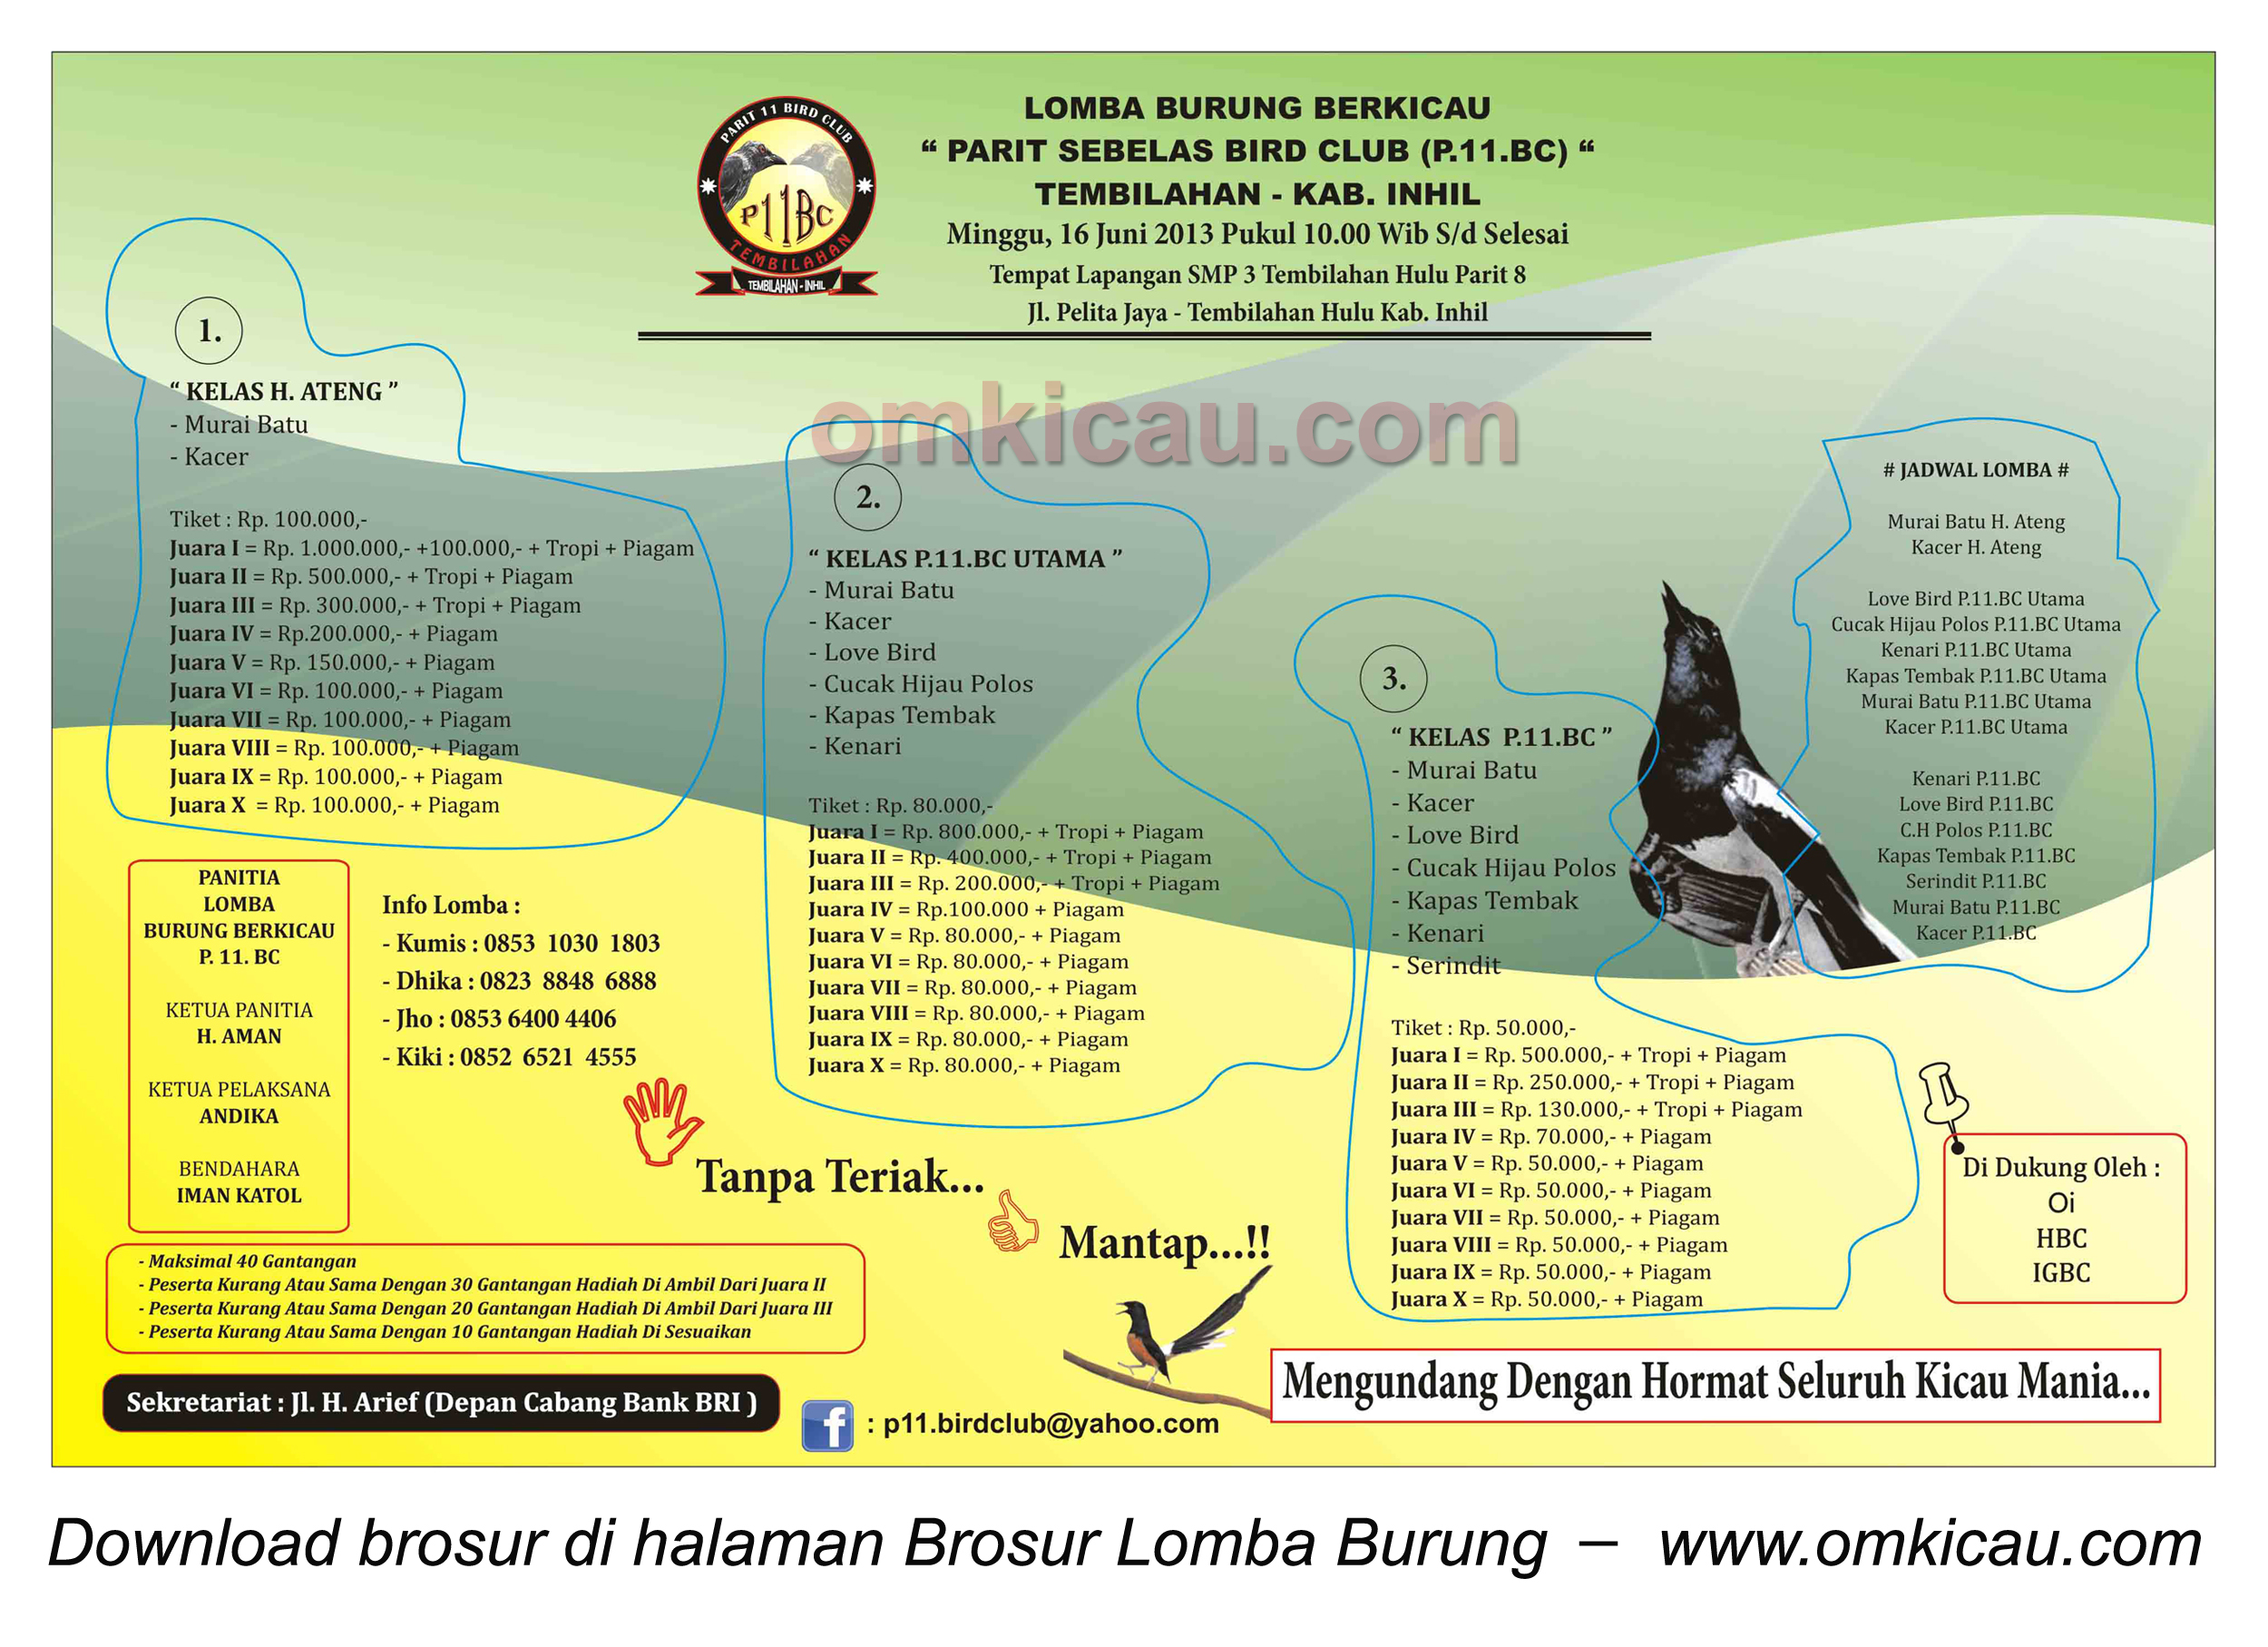 Brosur Lomba Burung Parit 11 BC, Tembilahan Hulu, 16 Juni 2013